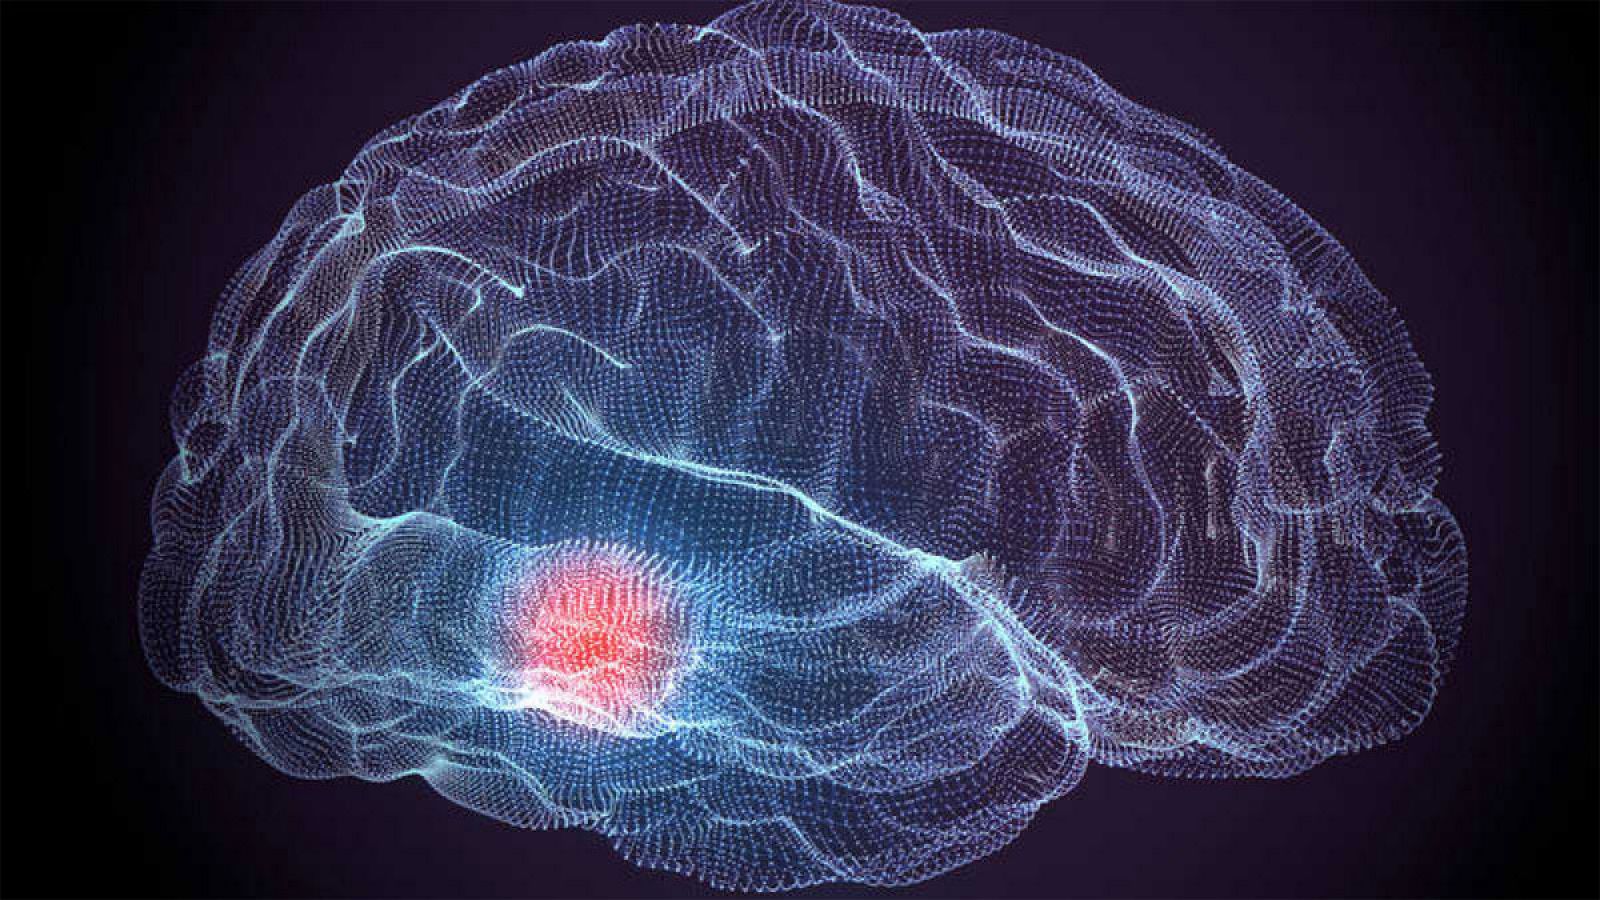 La evolución del cerebro humano se ha caracterizado por un aumento constante en la encefalización, o la relación del cerebro con el tamaño corporal.